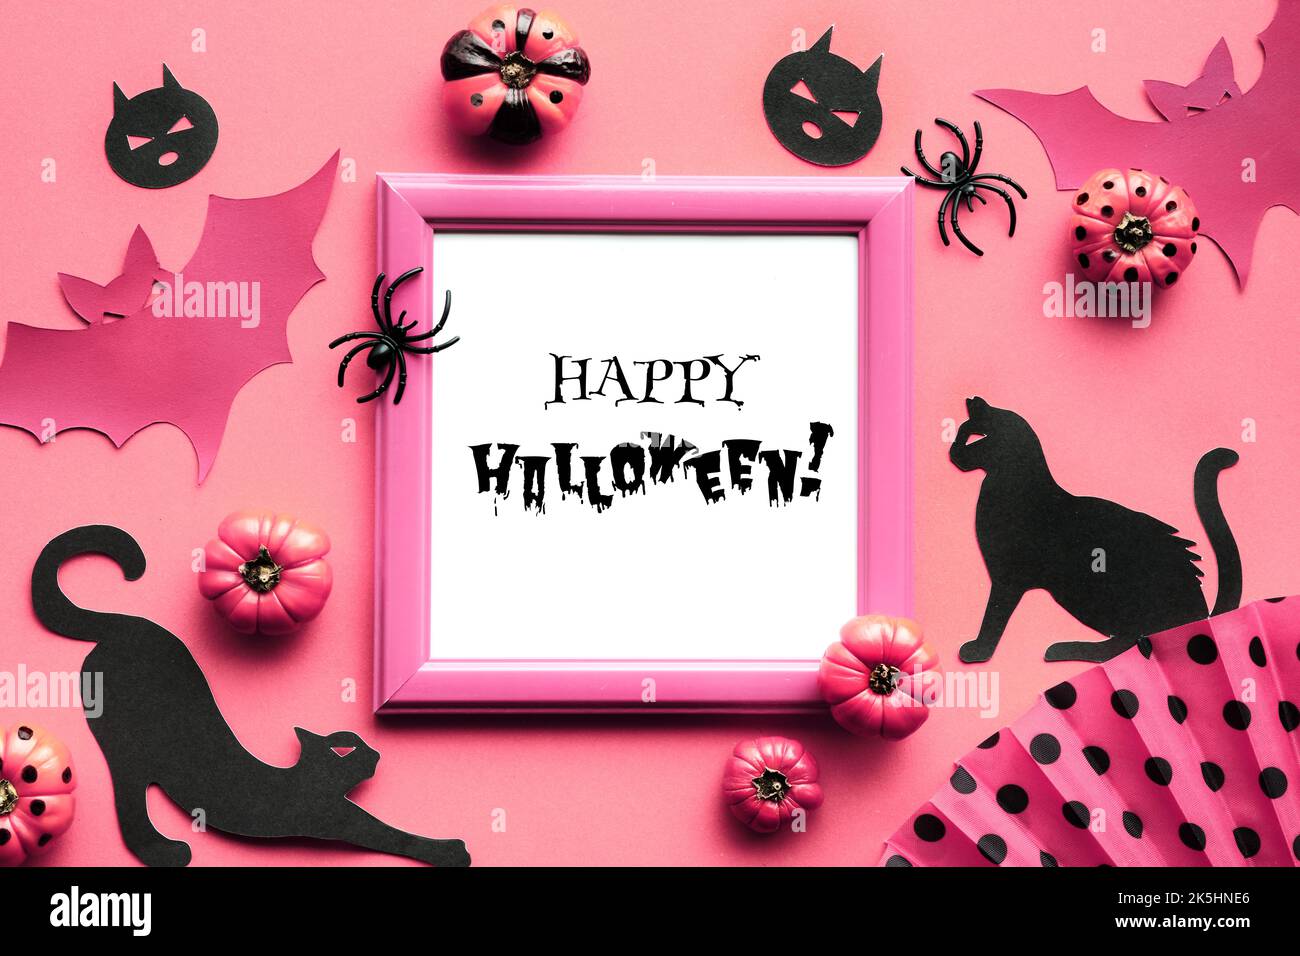 Sfondo rosa di Halloween. Gatti neri, silhouette pipistrelli e ragni neri. Zucche decorative rosa e ventaglio con motivi geometrici, pois di polka. F Foto Stock